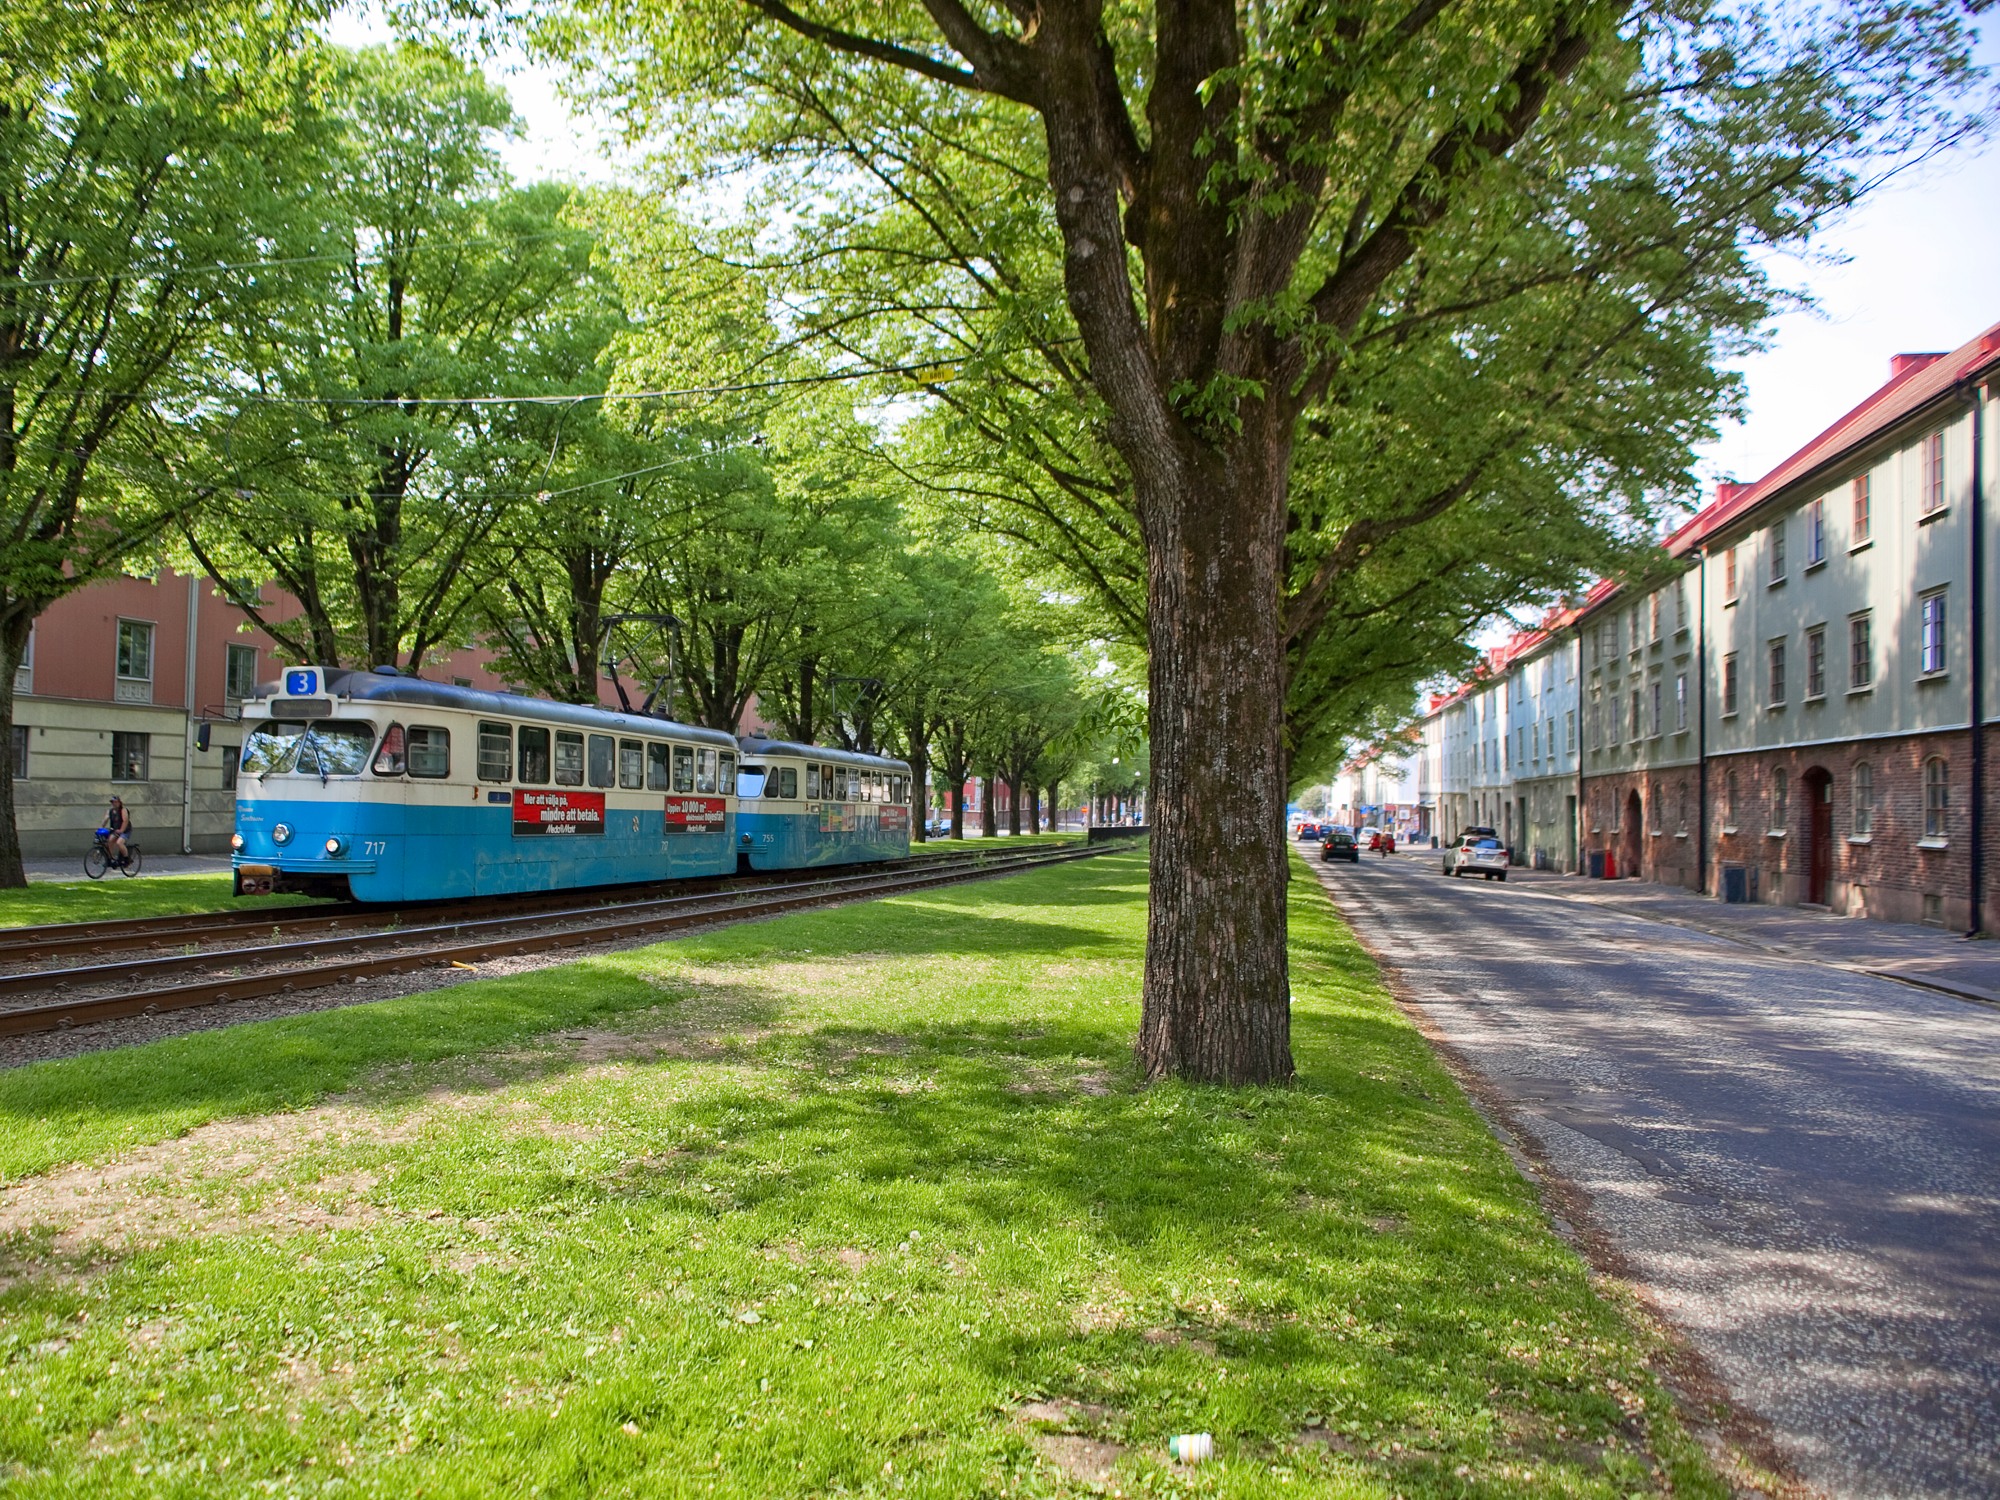 Utsikt till spårvagnsspåren där en blåvit spårvagn passerar, omgiven av träd, gräs och byggnader.